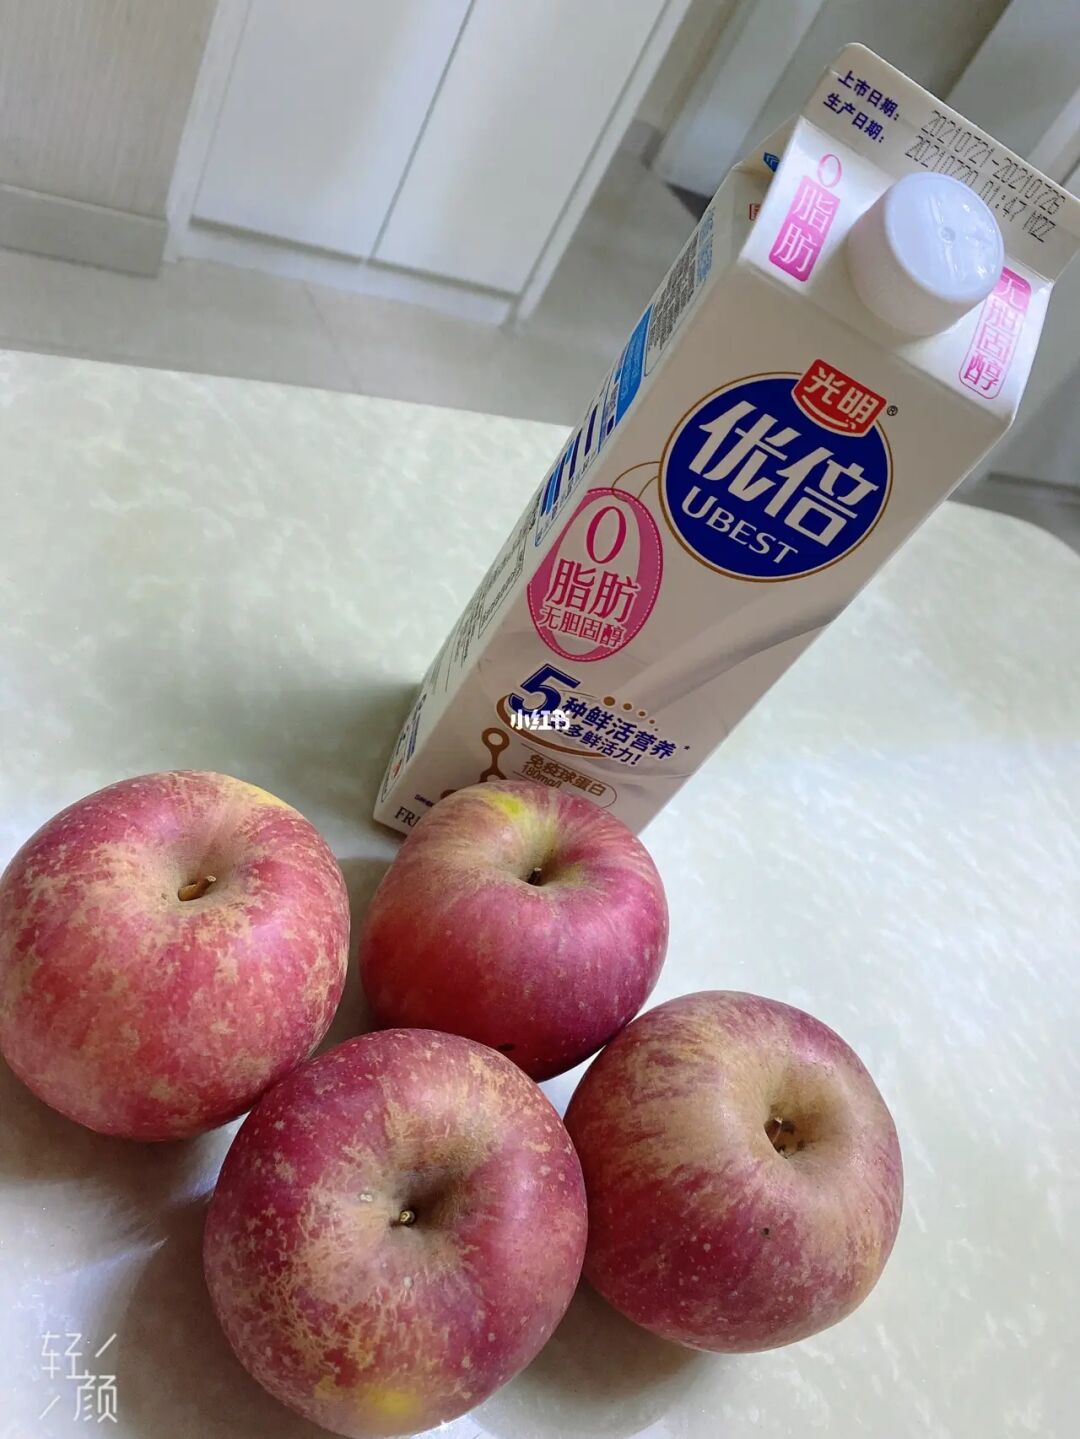 苹果和牛奶减肥吃完后有什么反应_苹果牛奶减肥后复食_苹果牛奶减肥法复食吃什么